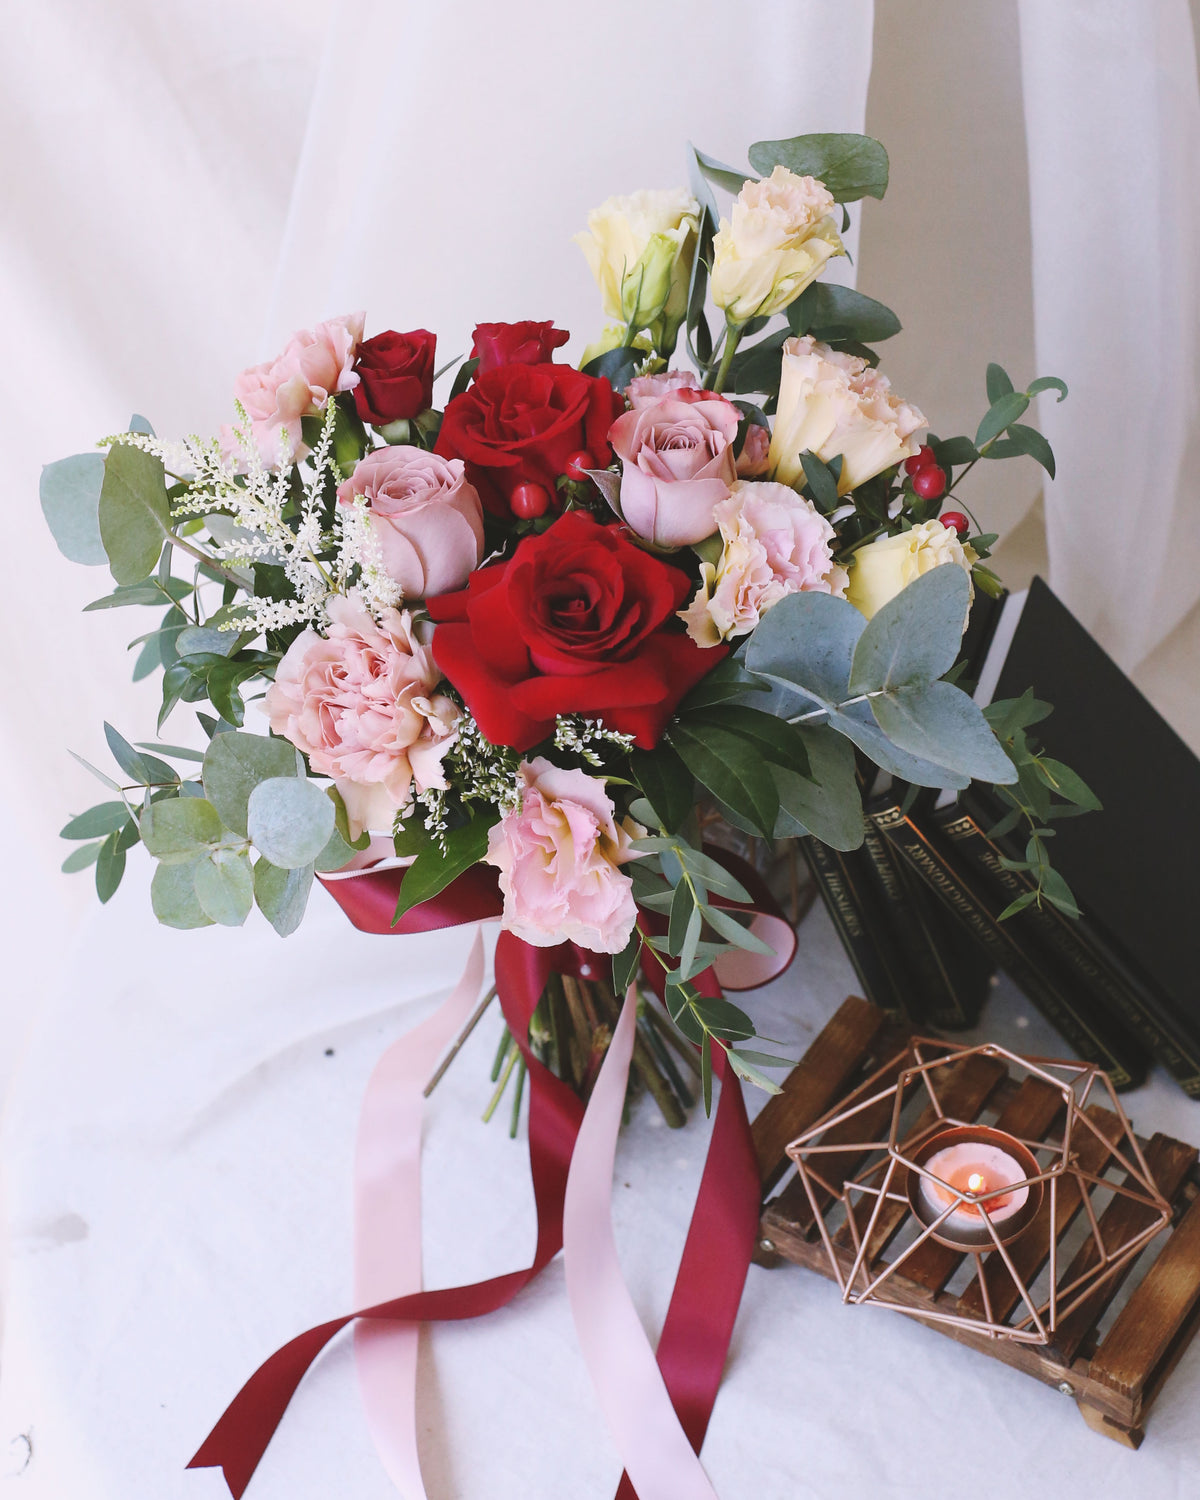 Macchiato Bridal Bouquet- Frontal